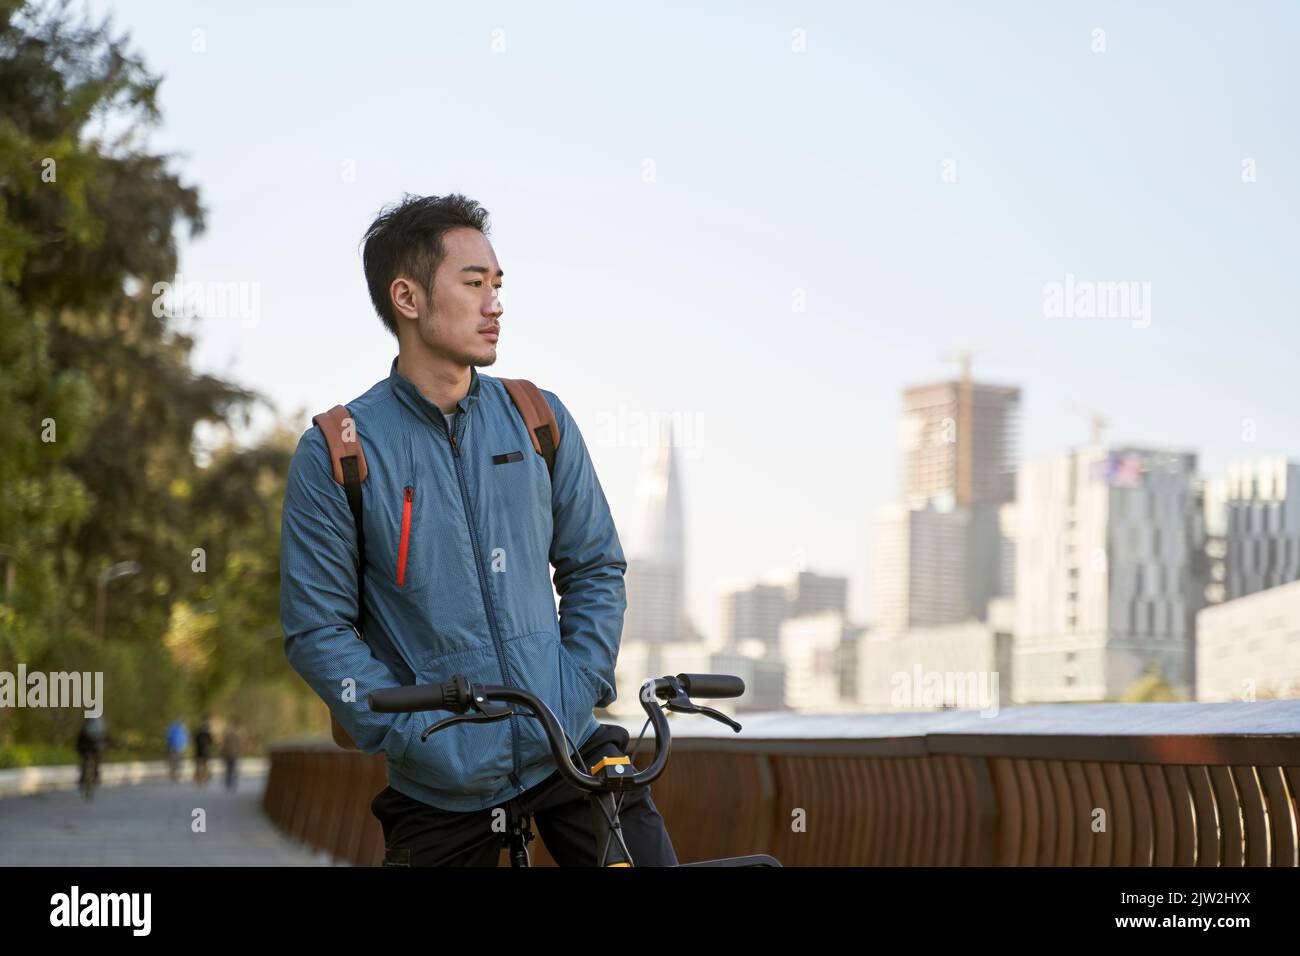 hombre adulto joven asiático sentado en su bicicleta perdido en el pensamiento en el parque de la ciudad Foto de stock